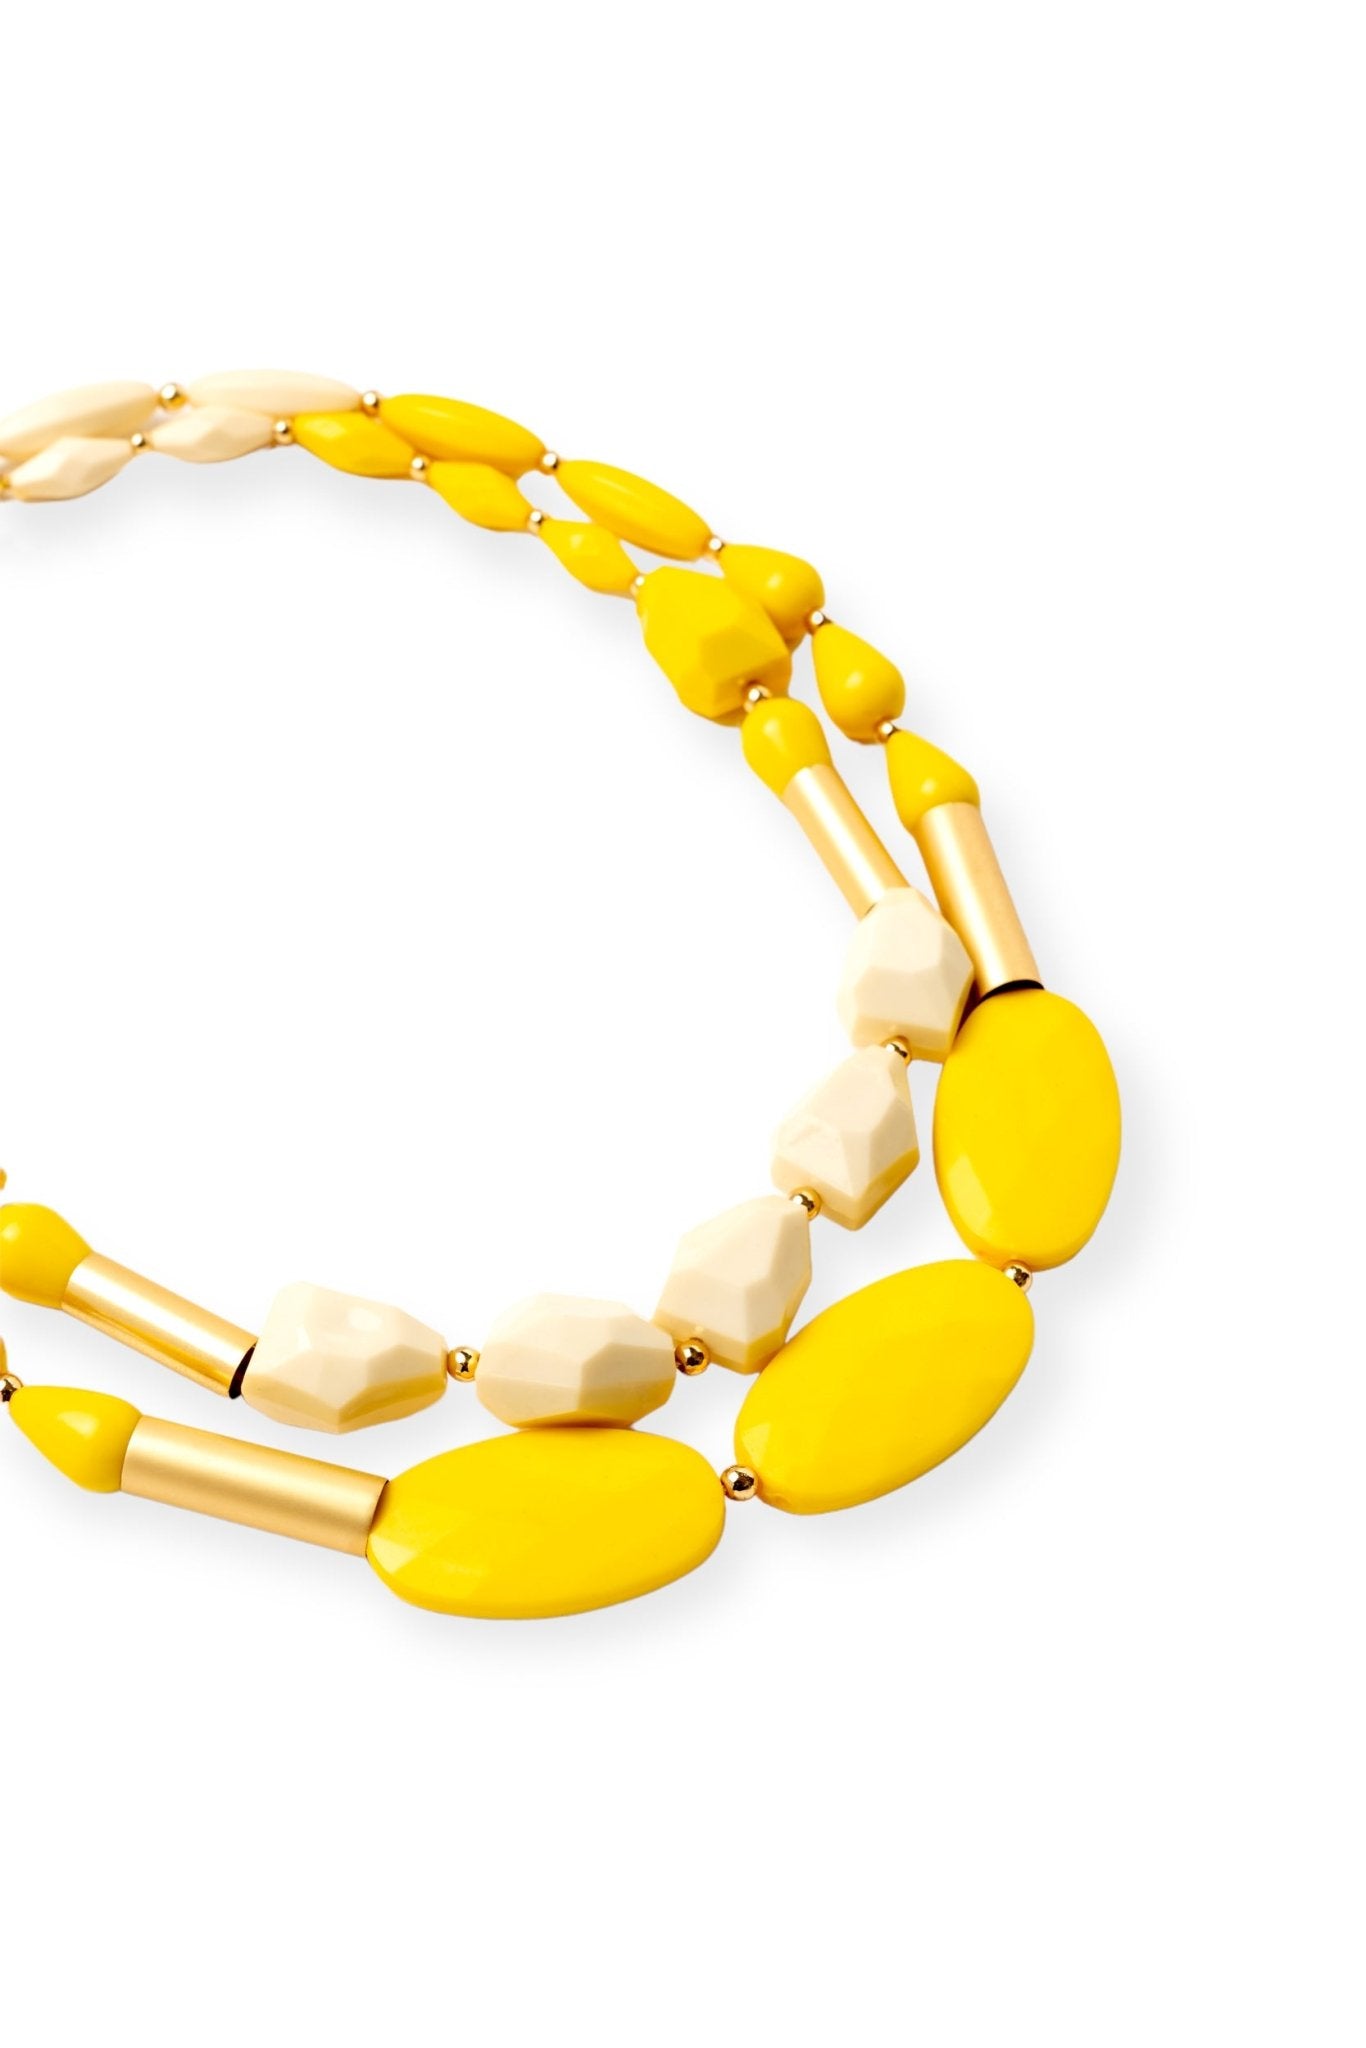 Collana a due fili, con inserti in resina giallo e beige - Mya Accessories